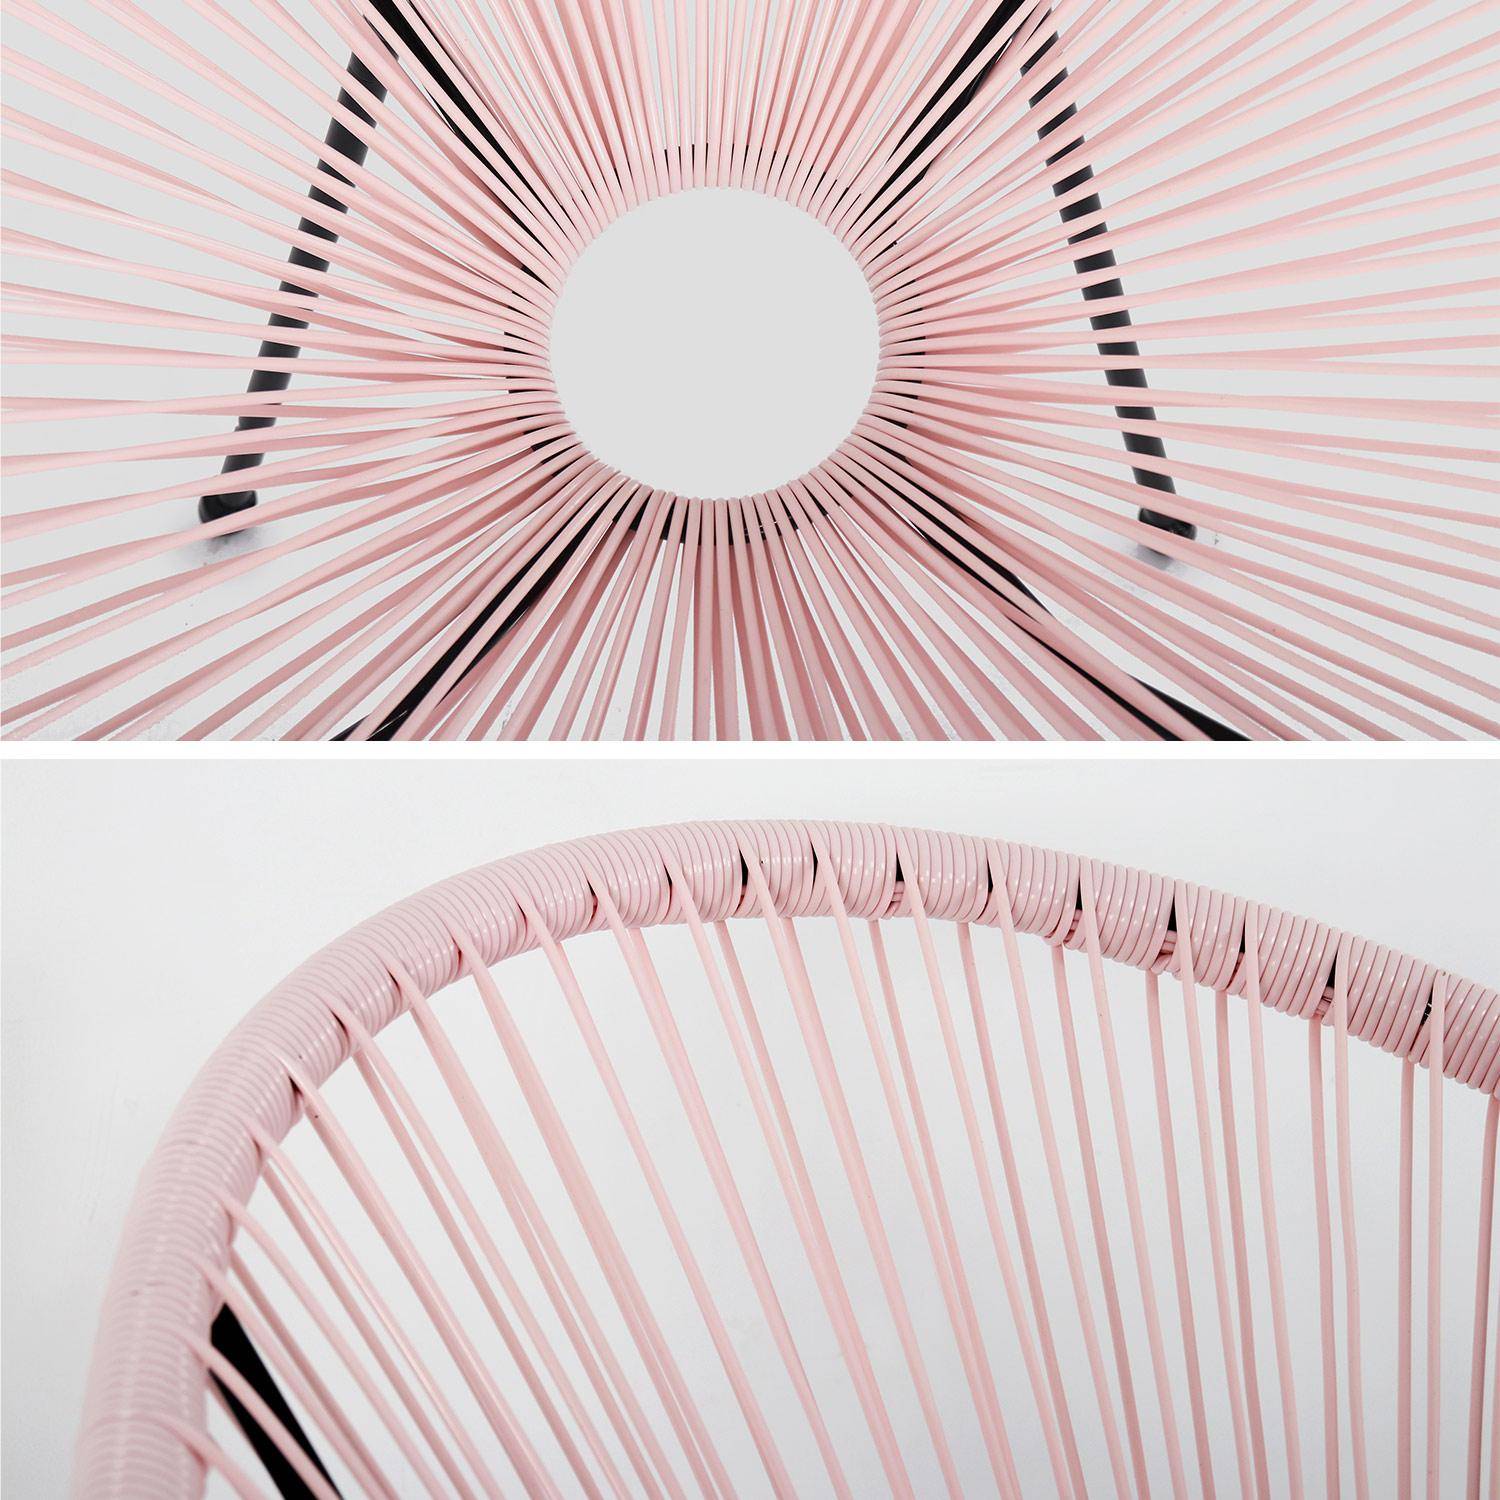 Fauteuil ACAPULCO forme d'oeuf - Rose pale - Fauteuil 4 pieds design rétro, cordage plastique, intérieur / extérieur Photo4